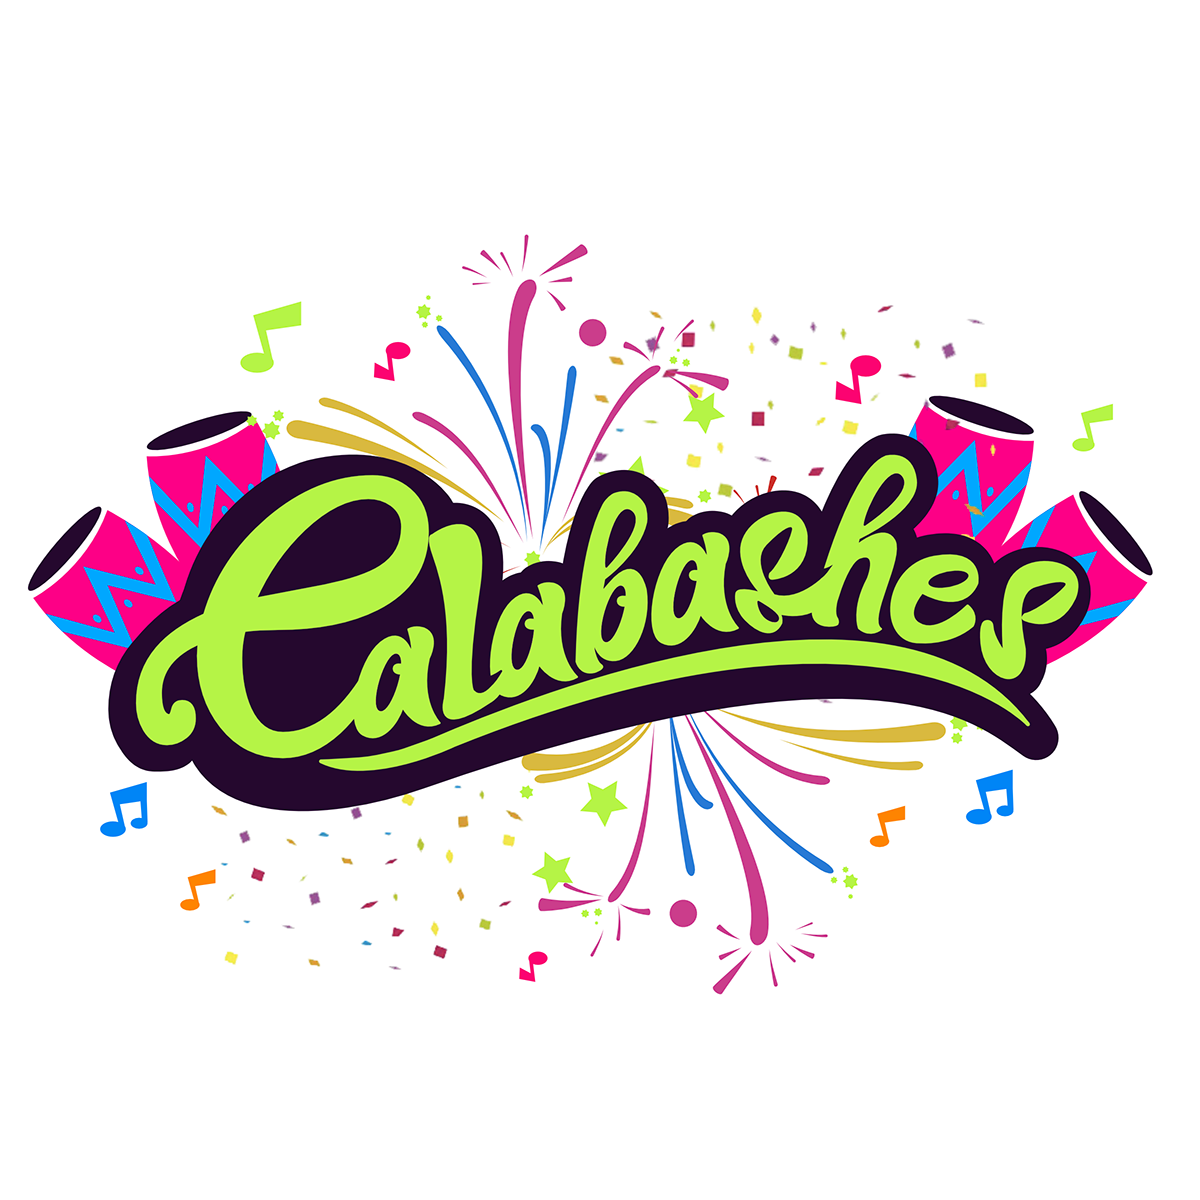 calabash calabashes band logo design tshirt graphics